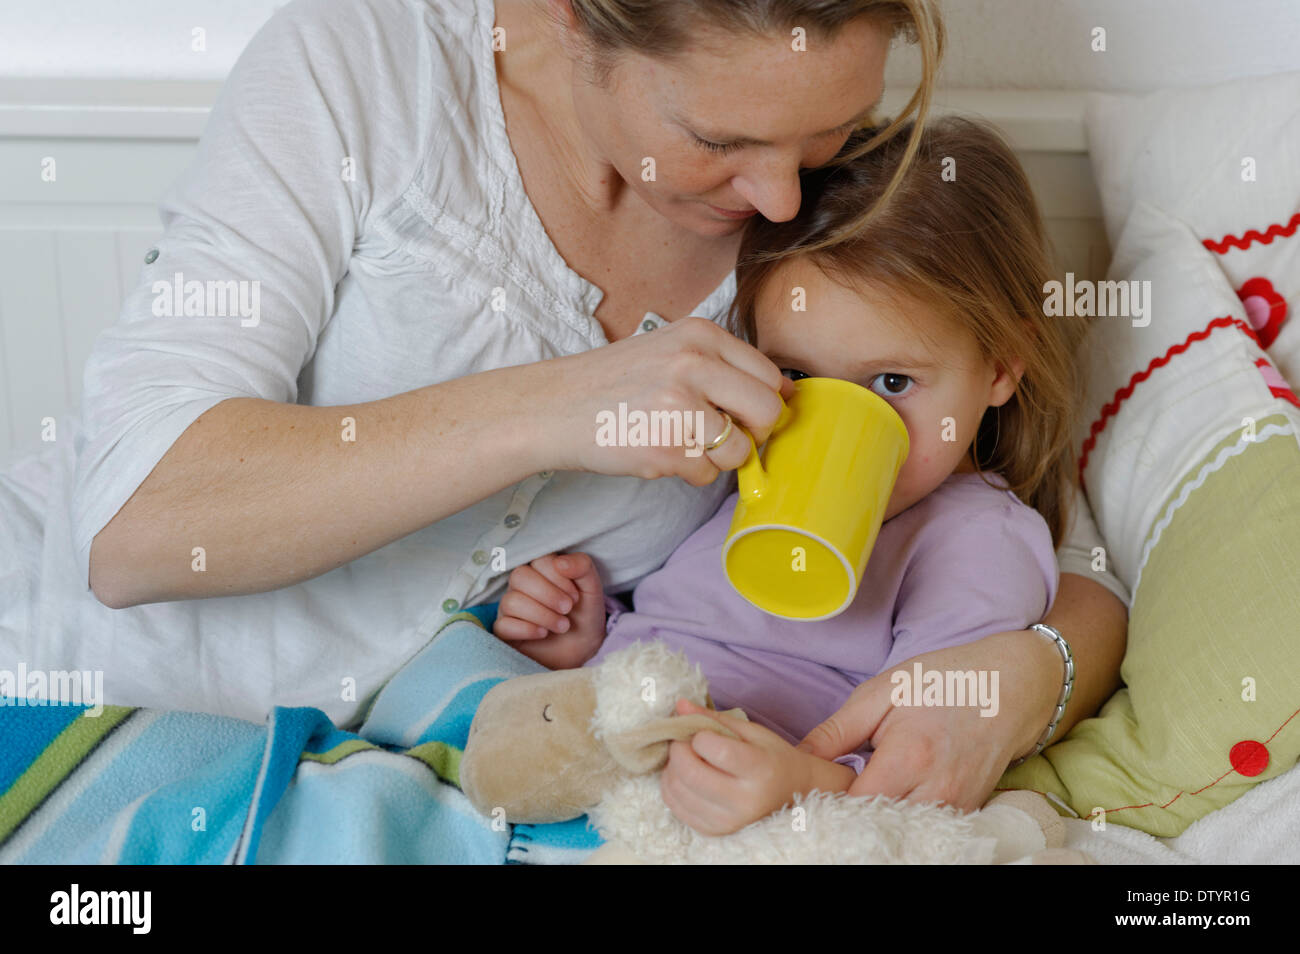 Mutter kümmert sich um ihre kranke Tochter, Verzicht auf heißen Tee, Mädchen im Bett liegend Stockfoto